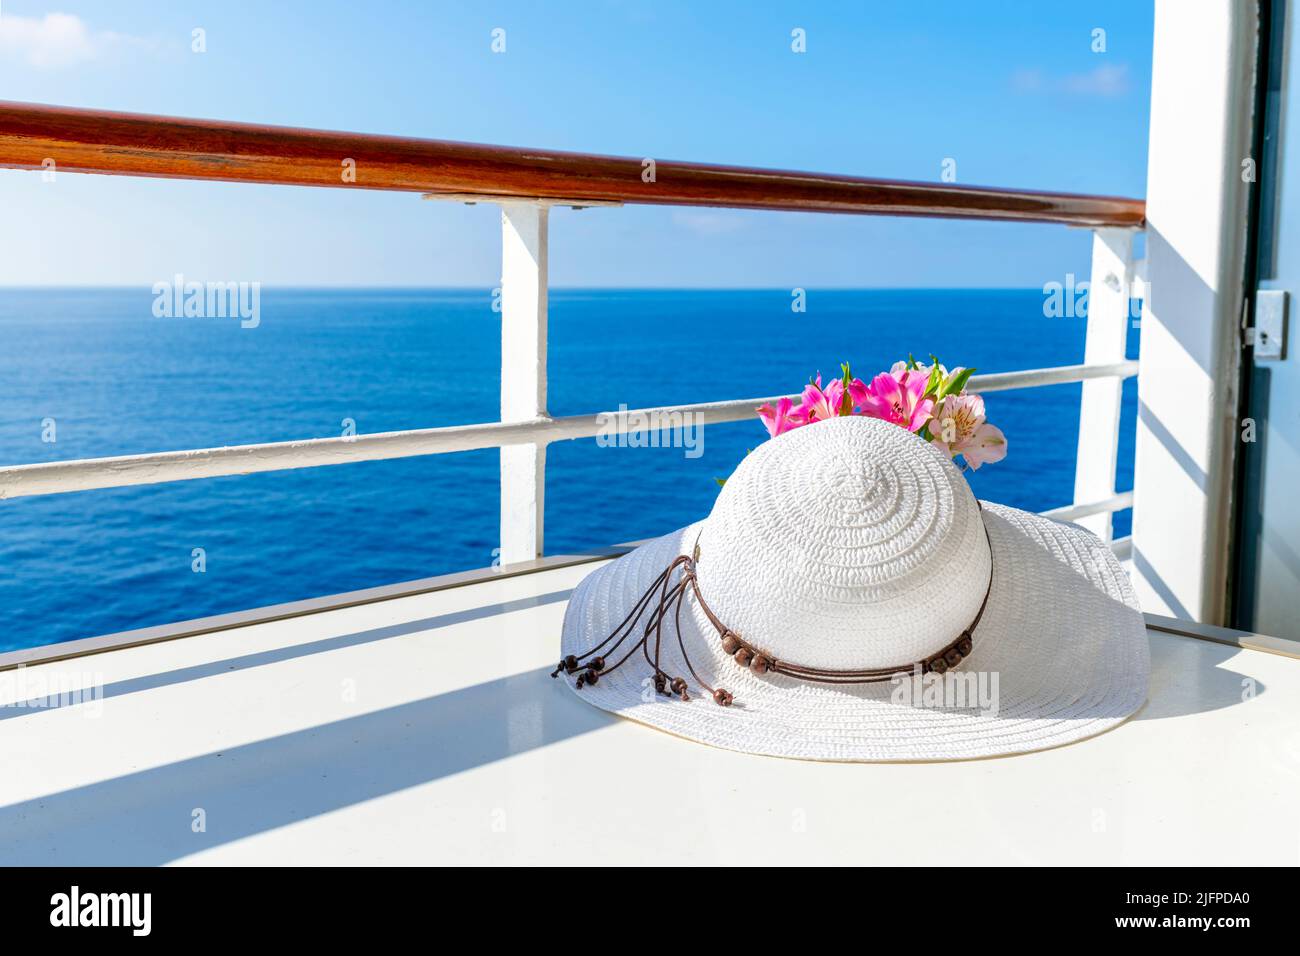 Un chapeau de soleil blanc pour femme se trouve à côté d'un petit bouquet de fleurs sur le balcon d'un bateau de croisière avec vue sur la mer bleue pendant une journée d'été. Banque D'Images